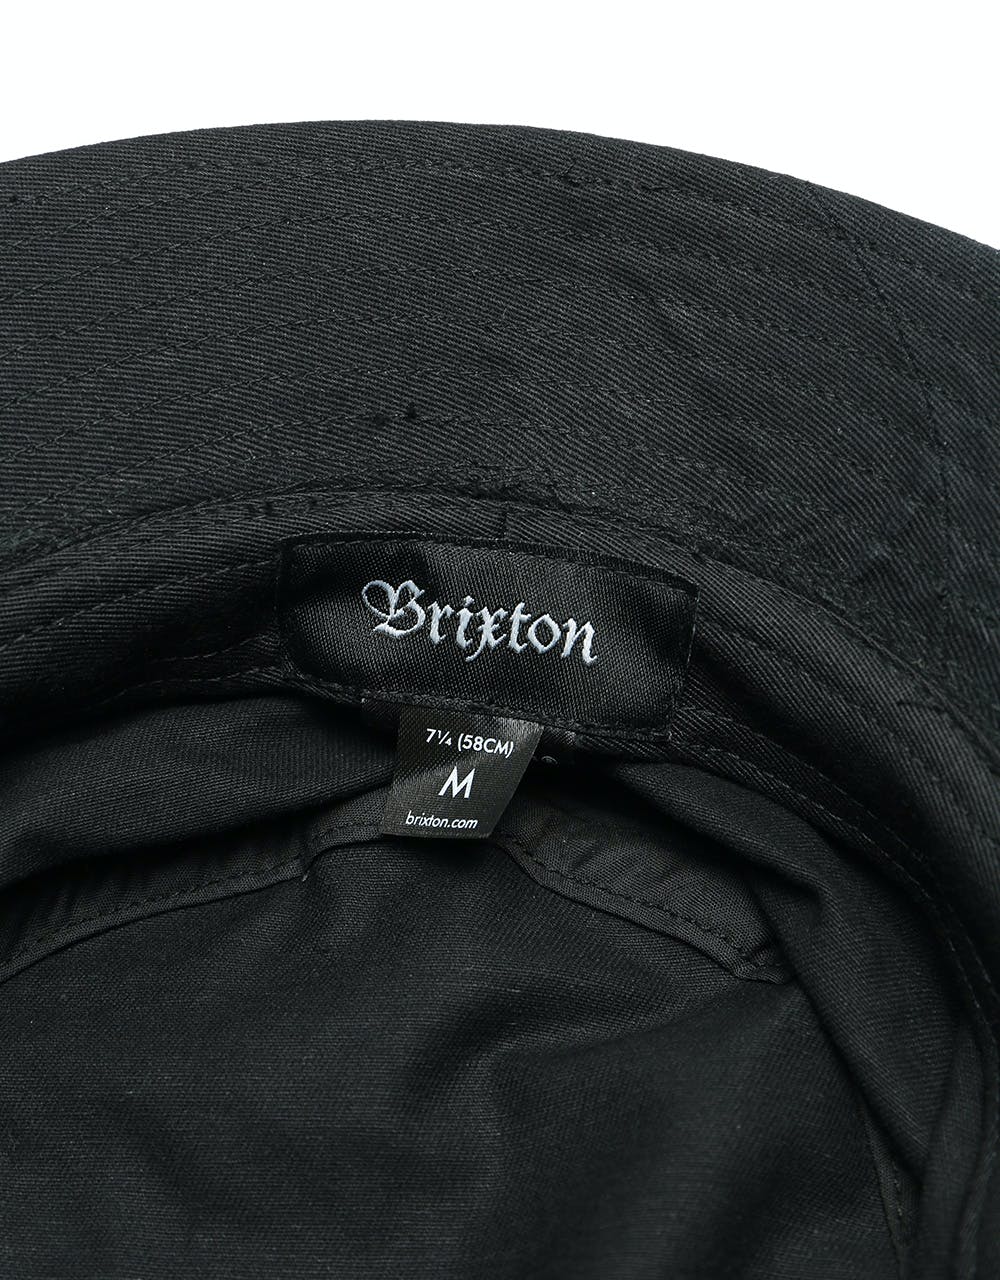 Brixton Oath Bucket Hat - Black